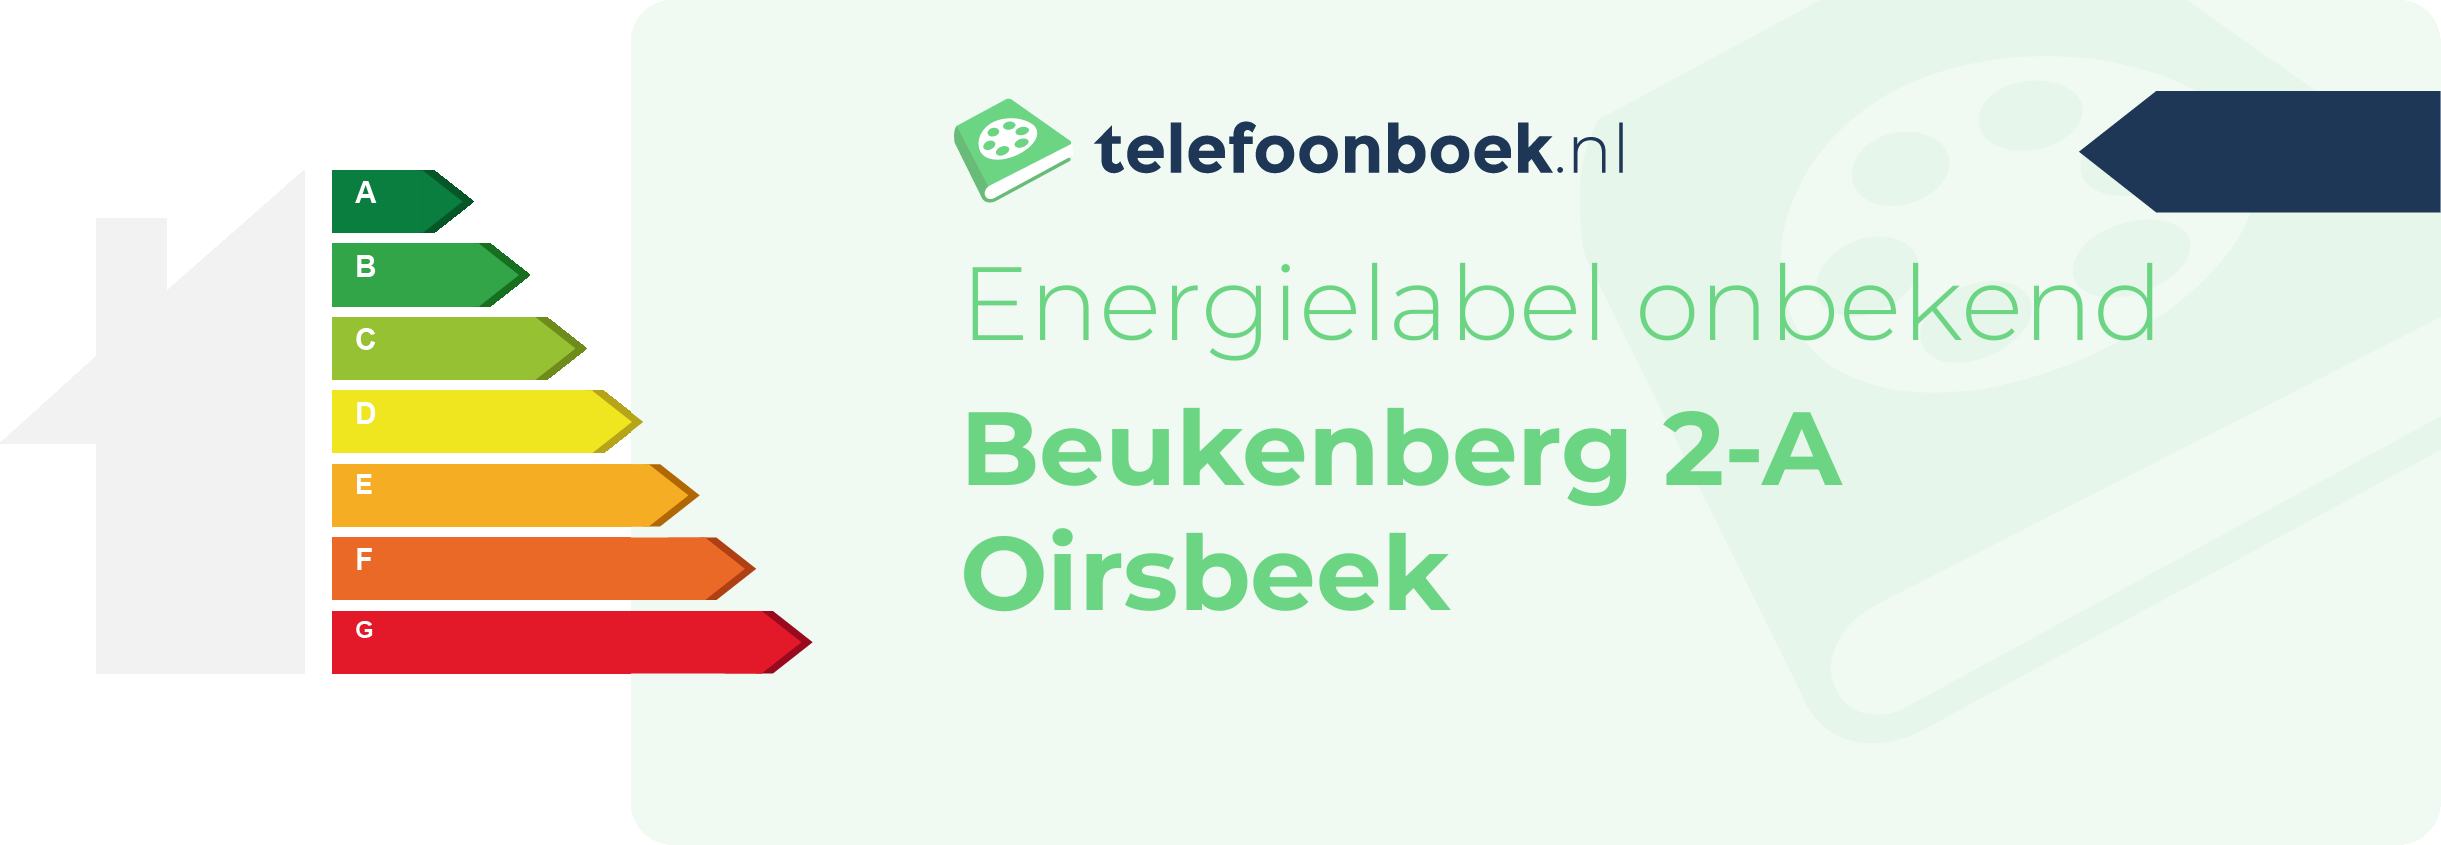 Energielabel Beukenberg 2-A Oirsbeek